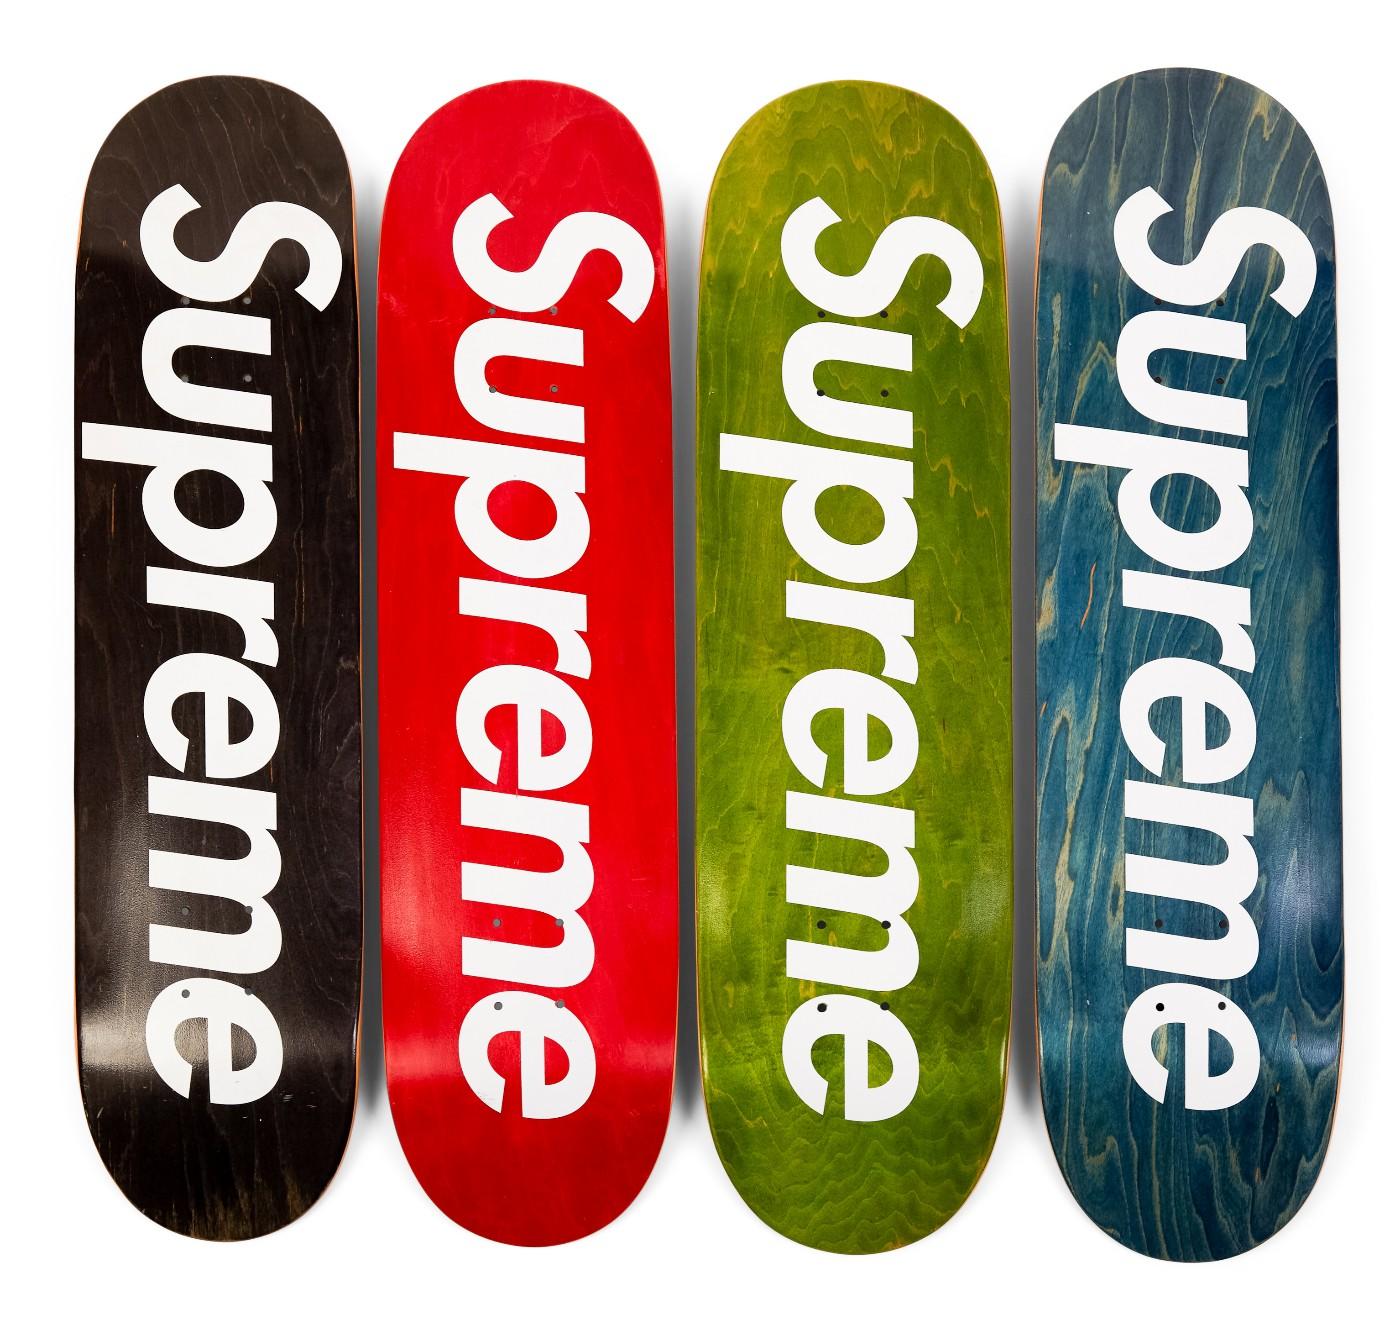 Sotheby's Supreme Skatedeck Auction/Louis Vuitton Drop